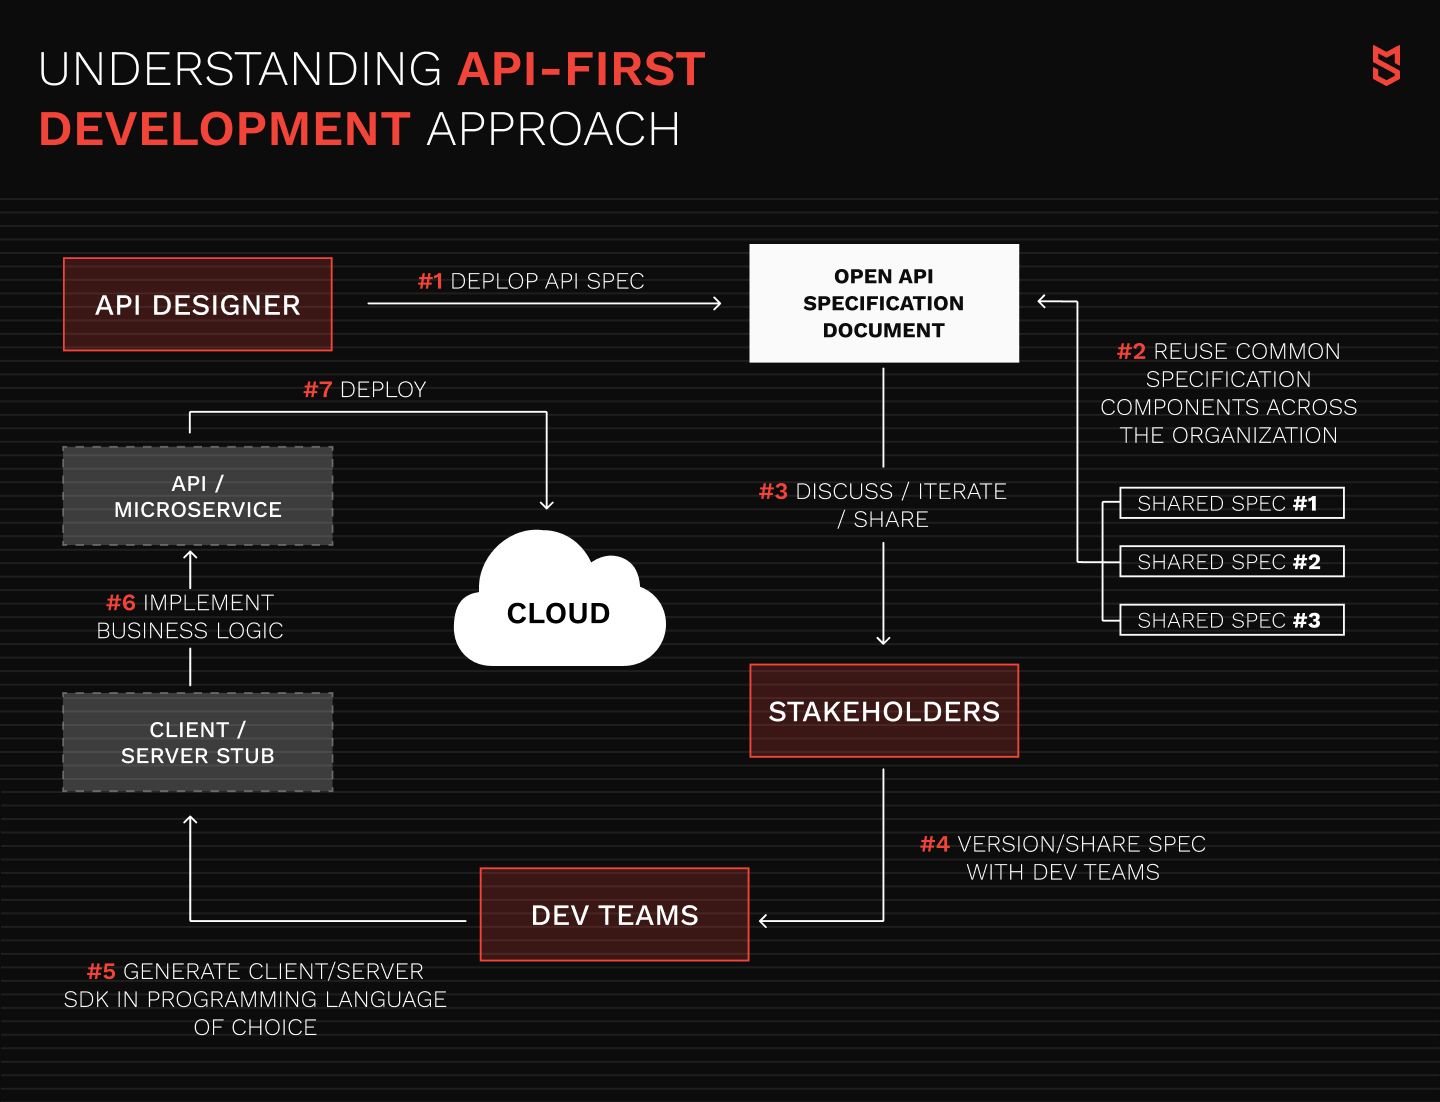 فهم نهج التطوير API الأول